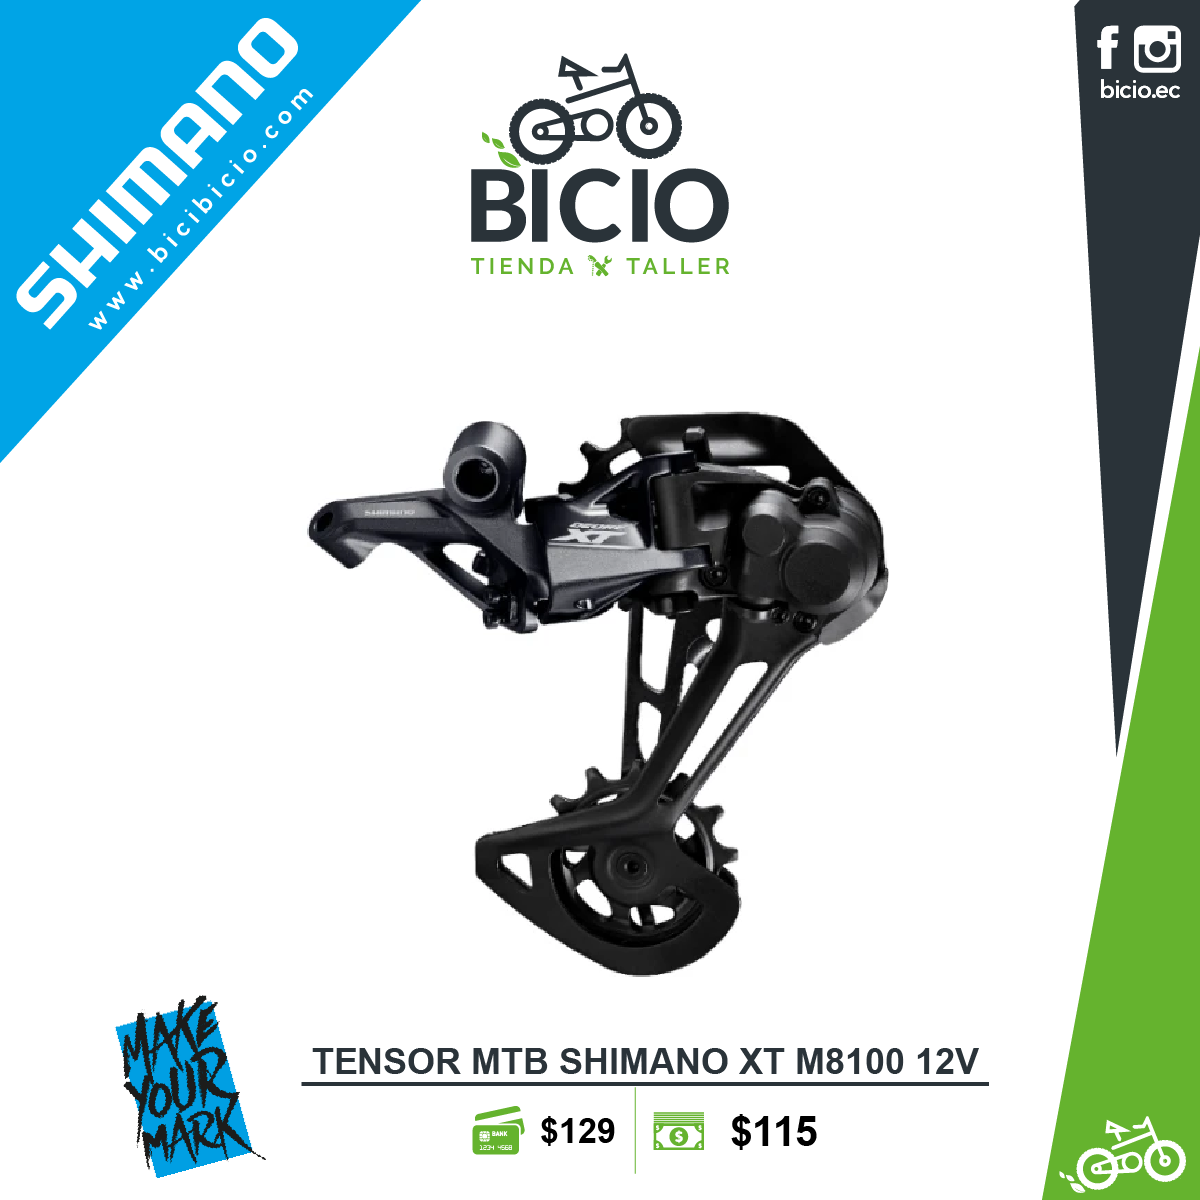 Tensor Shimano XT 12V - Bicio tienda - taller de bicicletas